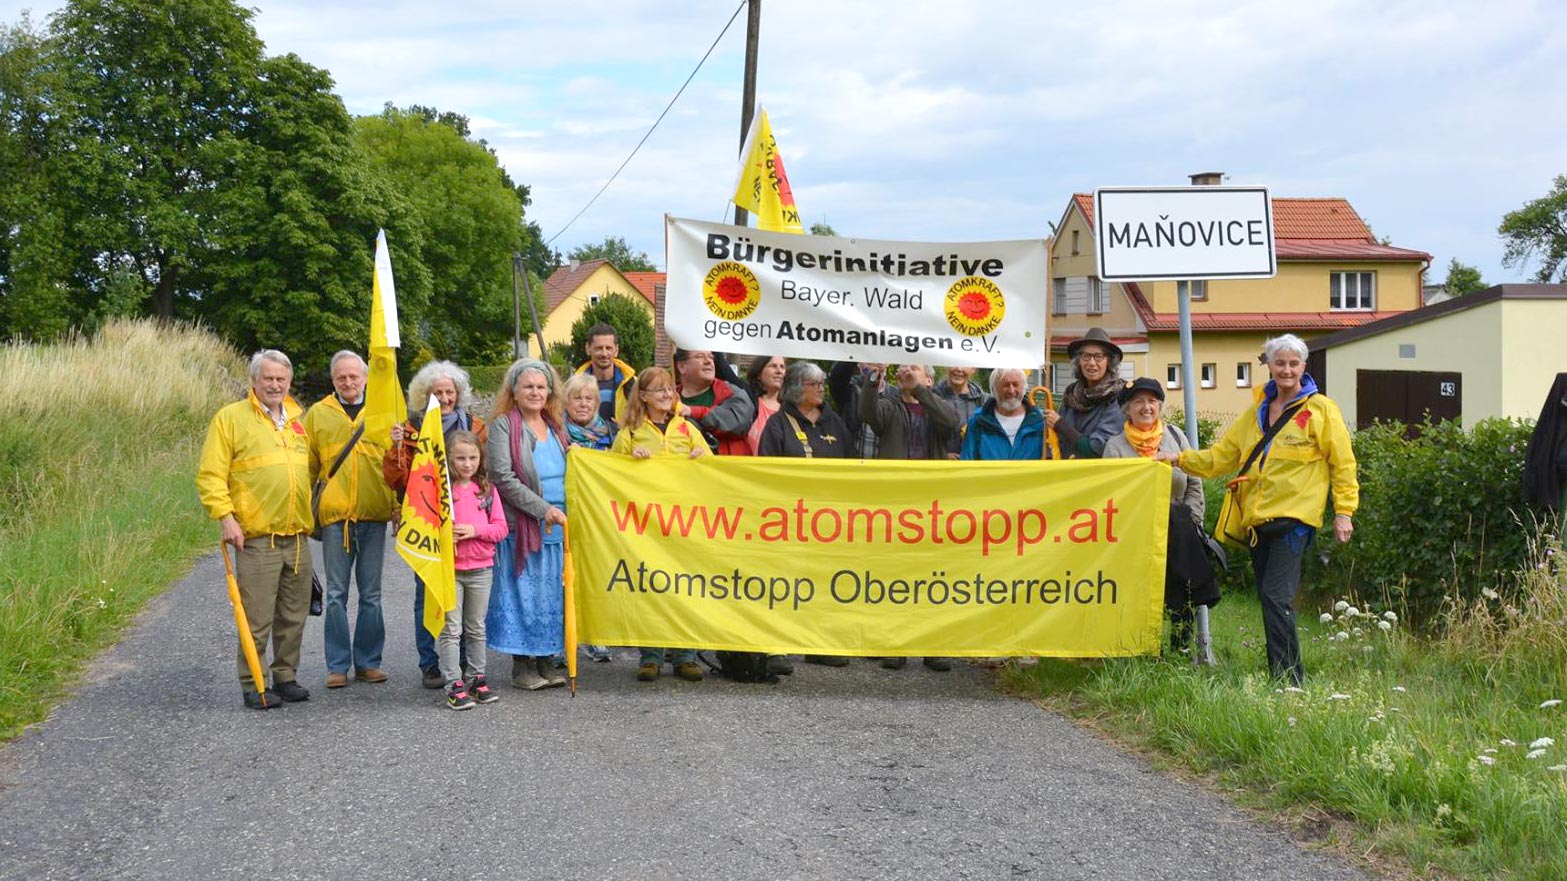 Wandergruppe mit Bannern und Fahnen gegen Atomkraft beim Protestmarsch